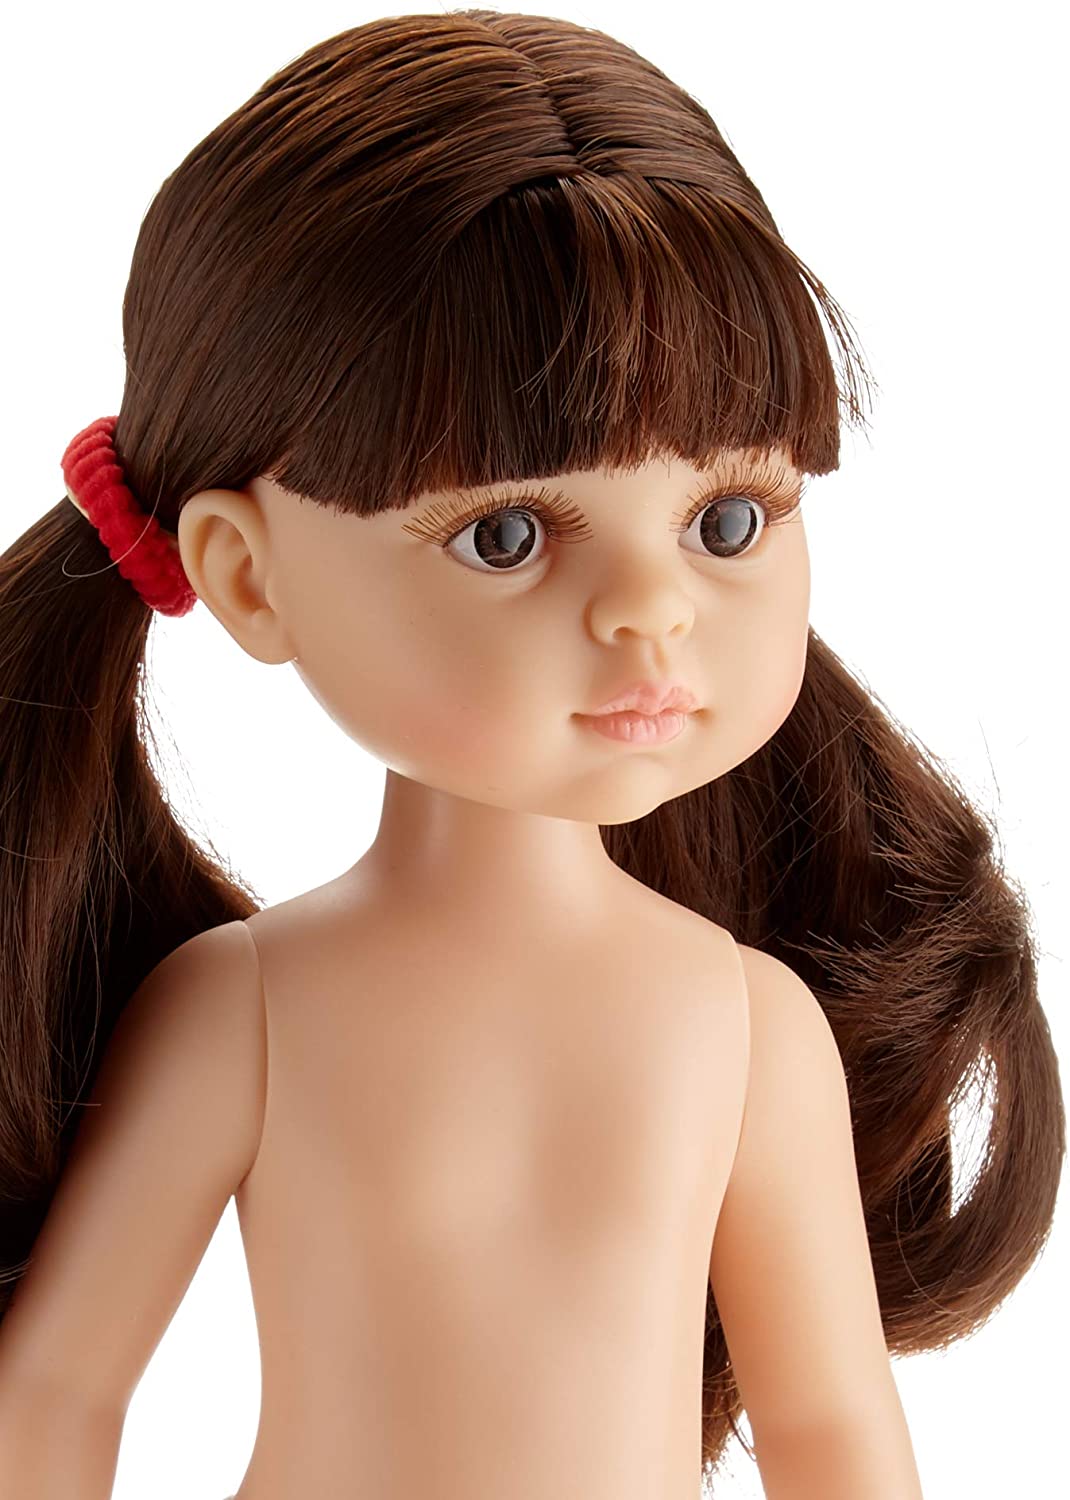 Кукла Кэрол без одежды с двумя хвостиками 32 см  